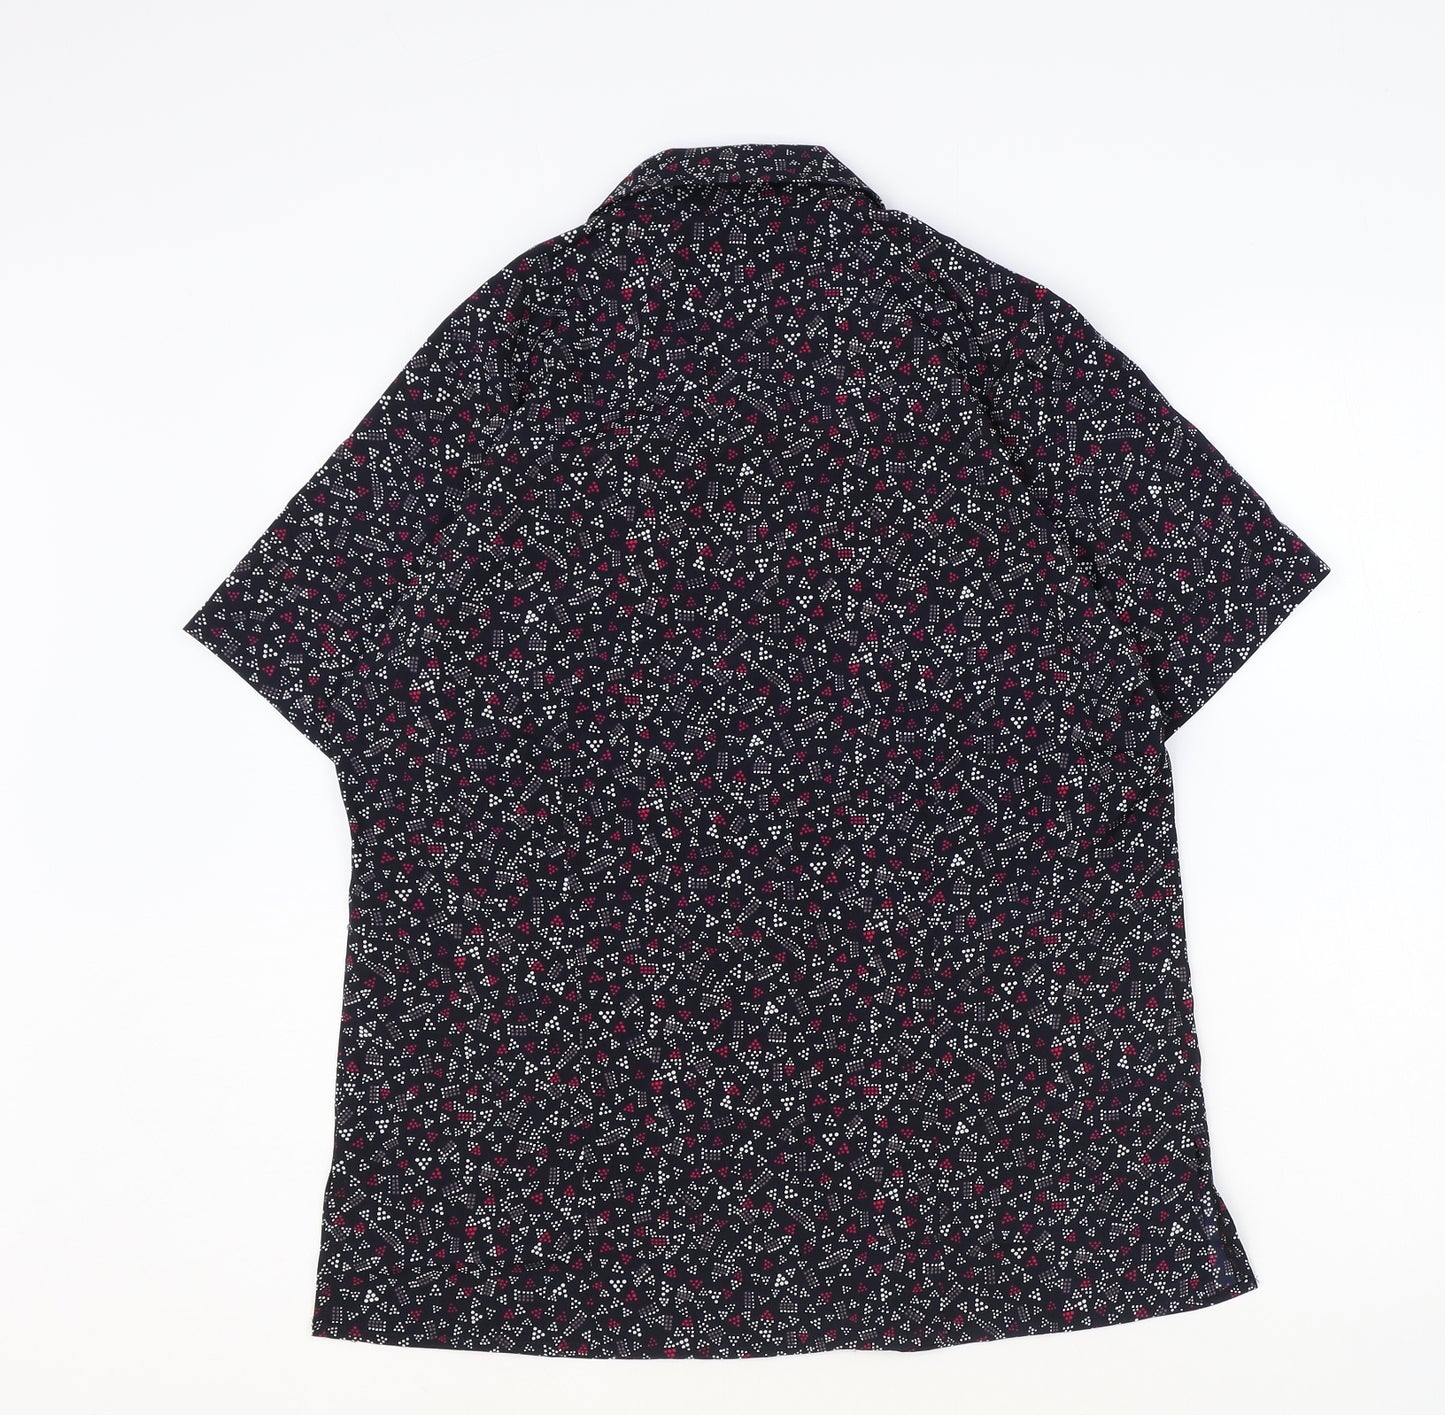 Vortex Womens Black Geometric Polyester Basic T-Shirt Size 12 V-Neck